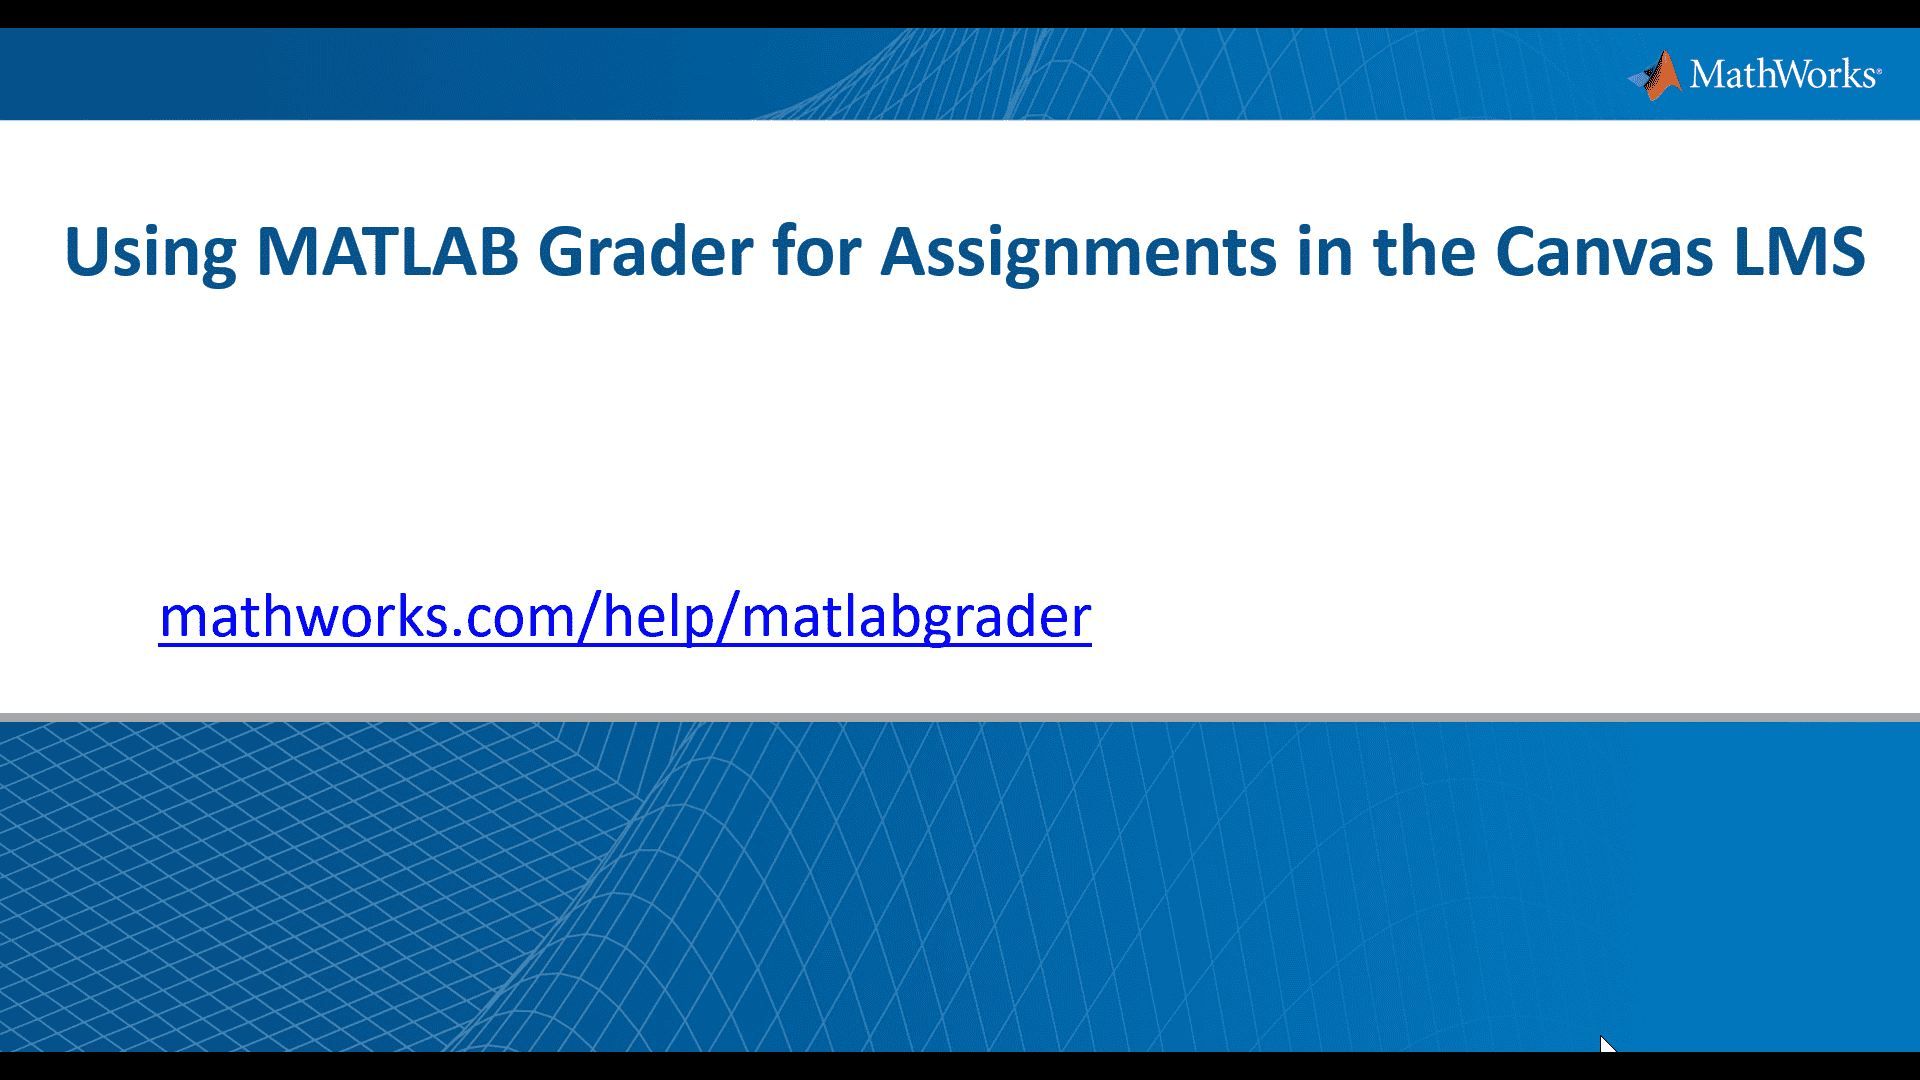 了解教师如何使用MATLAB Grader将自动评分的基于MATLAB的作业添加到他们的Canvas学习管理系统。